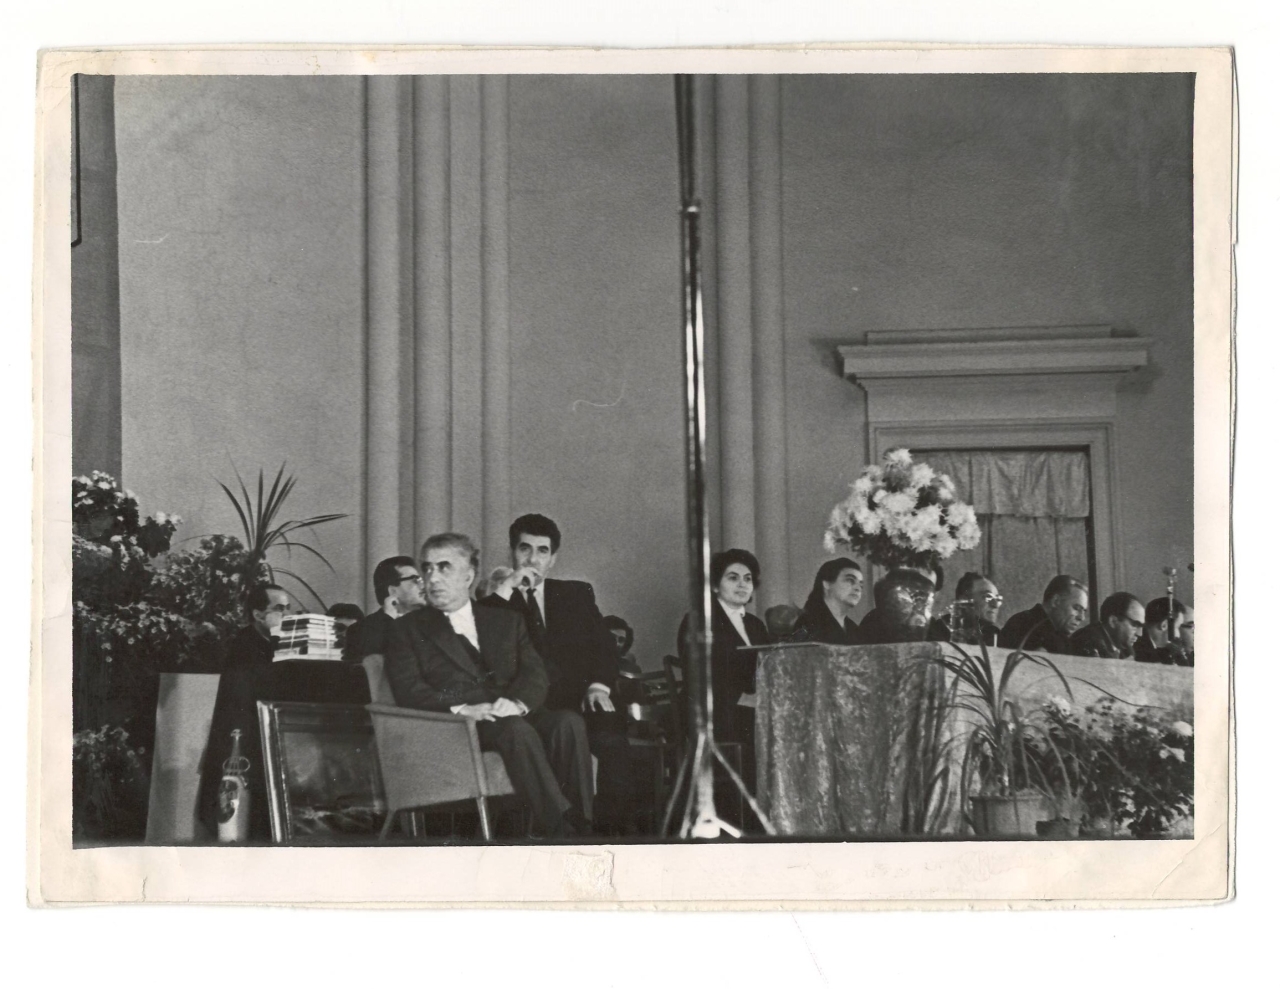 Լուսանկար . Ա.Խաչատրյանը կոմպոզիտոր Էդվարդ Միրզոյանի և հայ մշակույթի այլ գործիչների հետ  իր ծննդյան 60 -ամյակին նվիրված   հանդիսավոր նիստին ՝ Հայֆիլհարմոնիայի մեծ համերգասրահում 